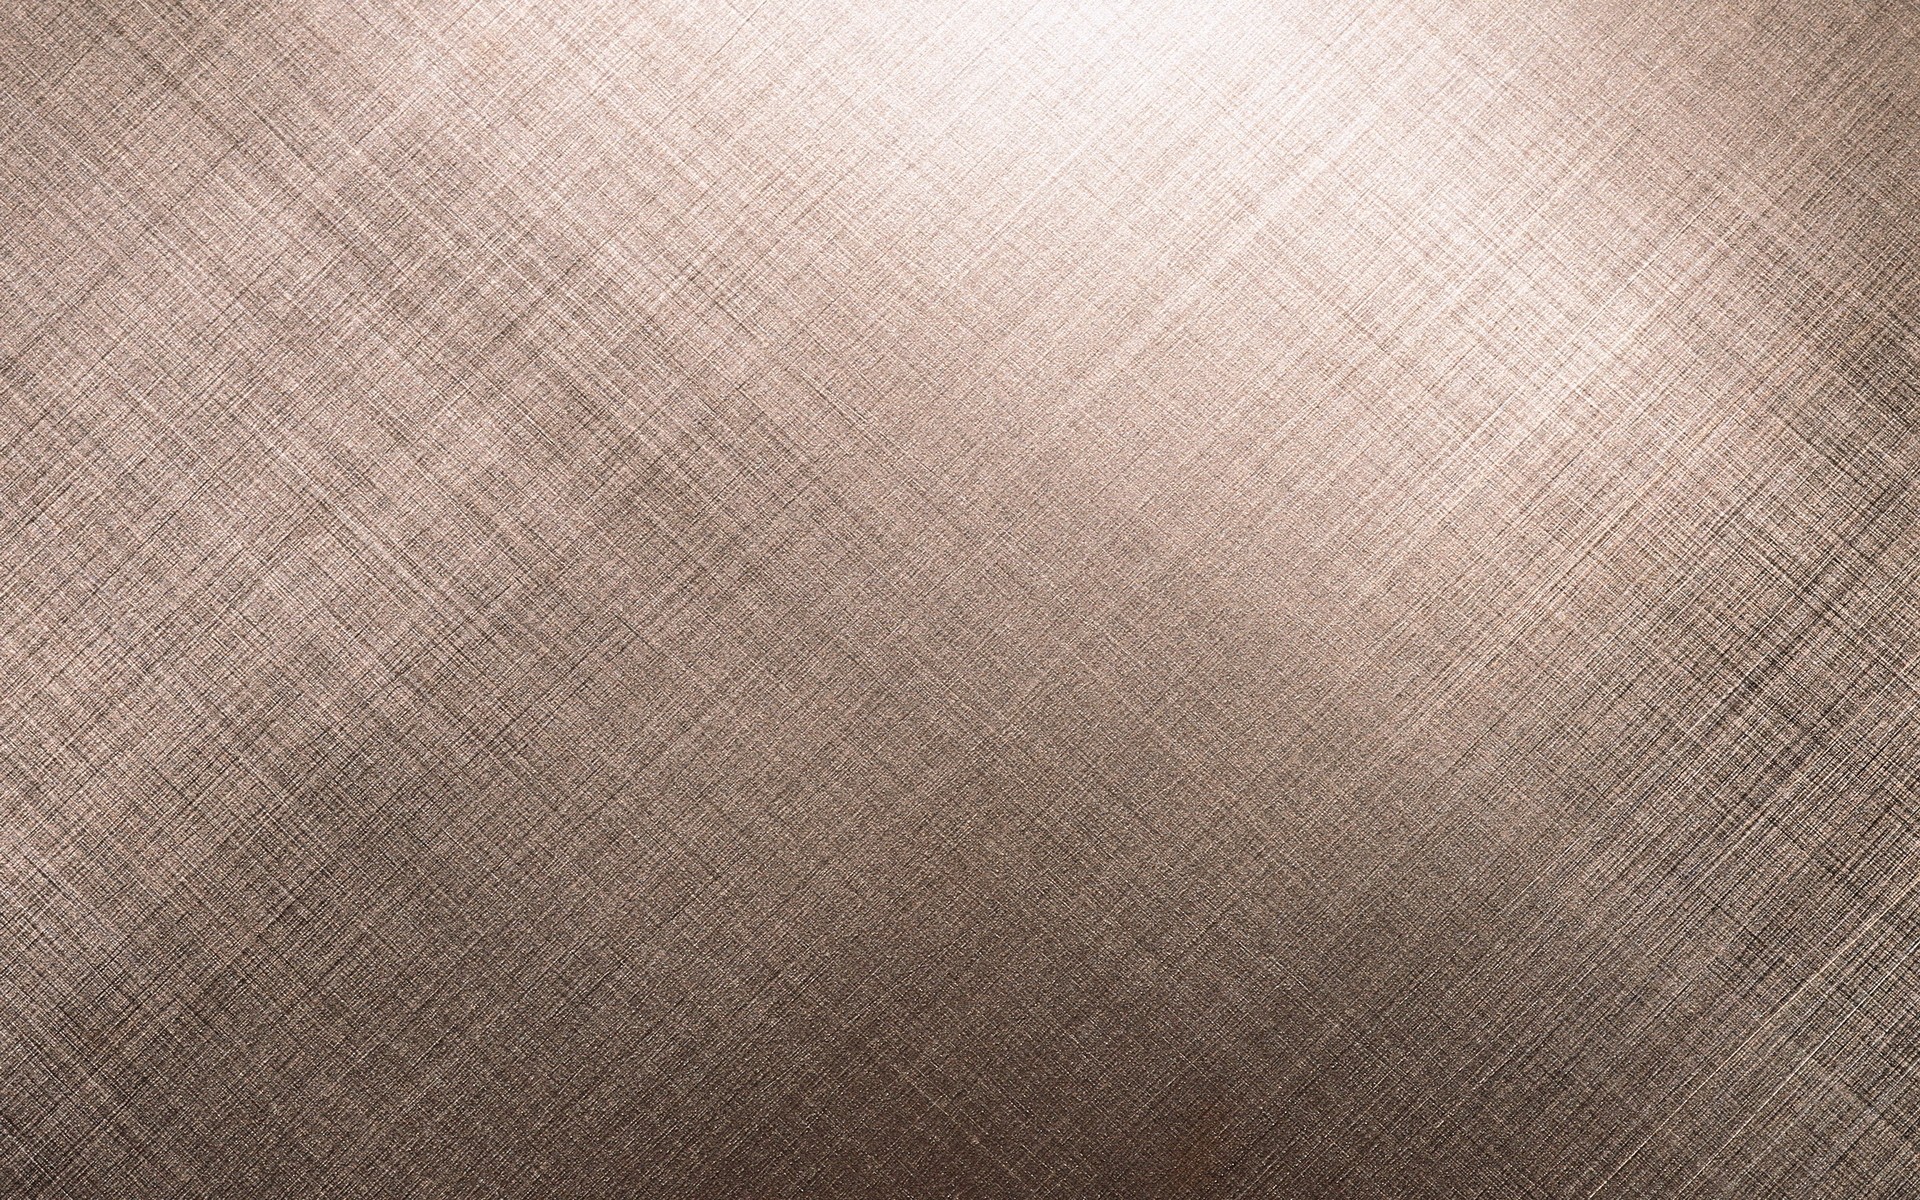 fabric texture wallpaper,brown,beige,pattern,flooring,linen